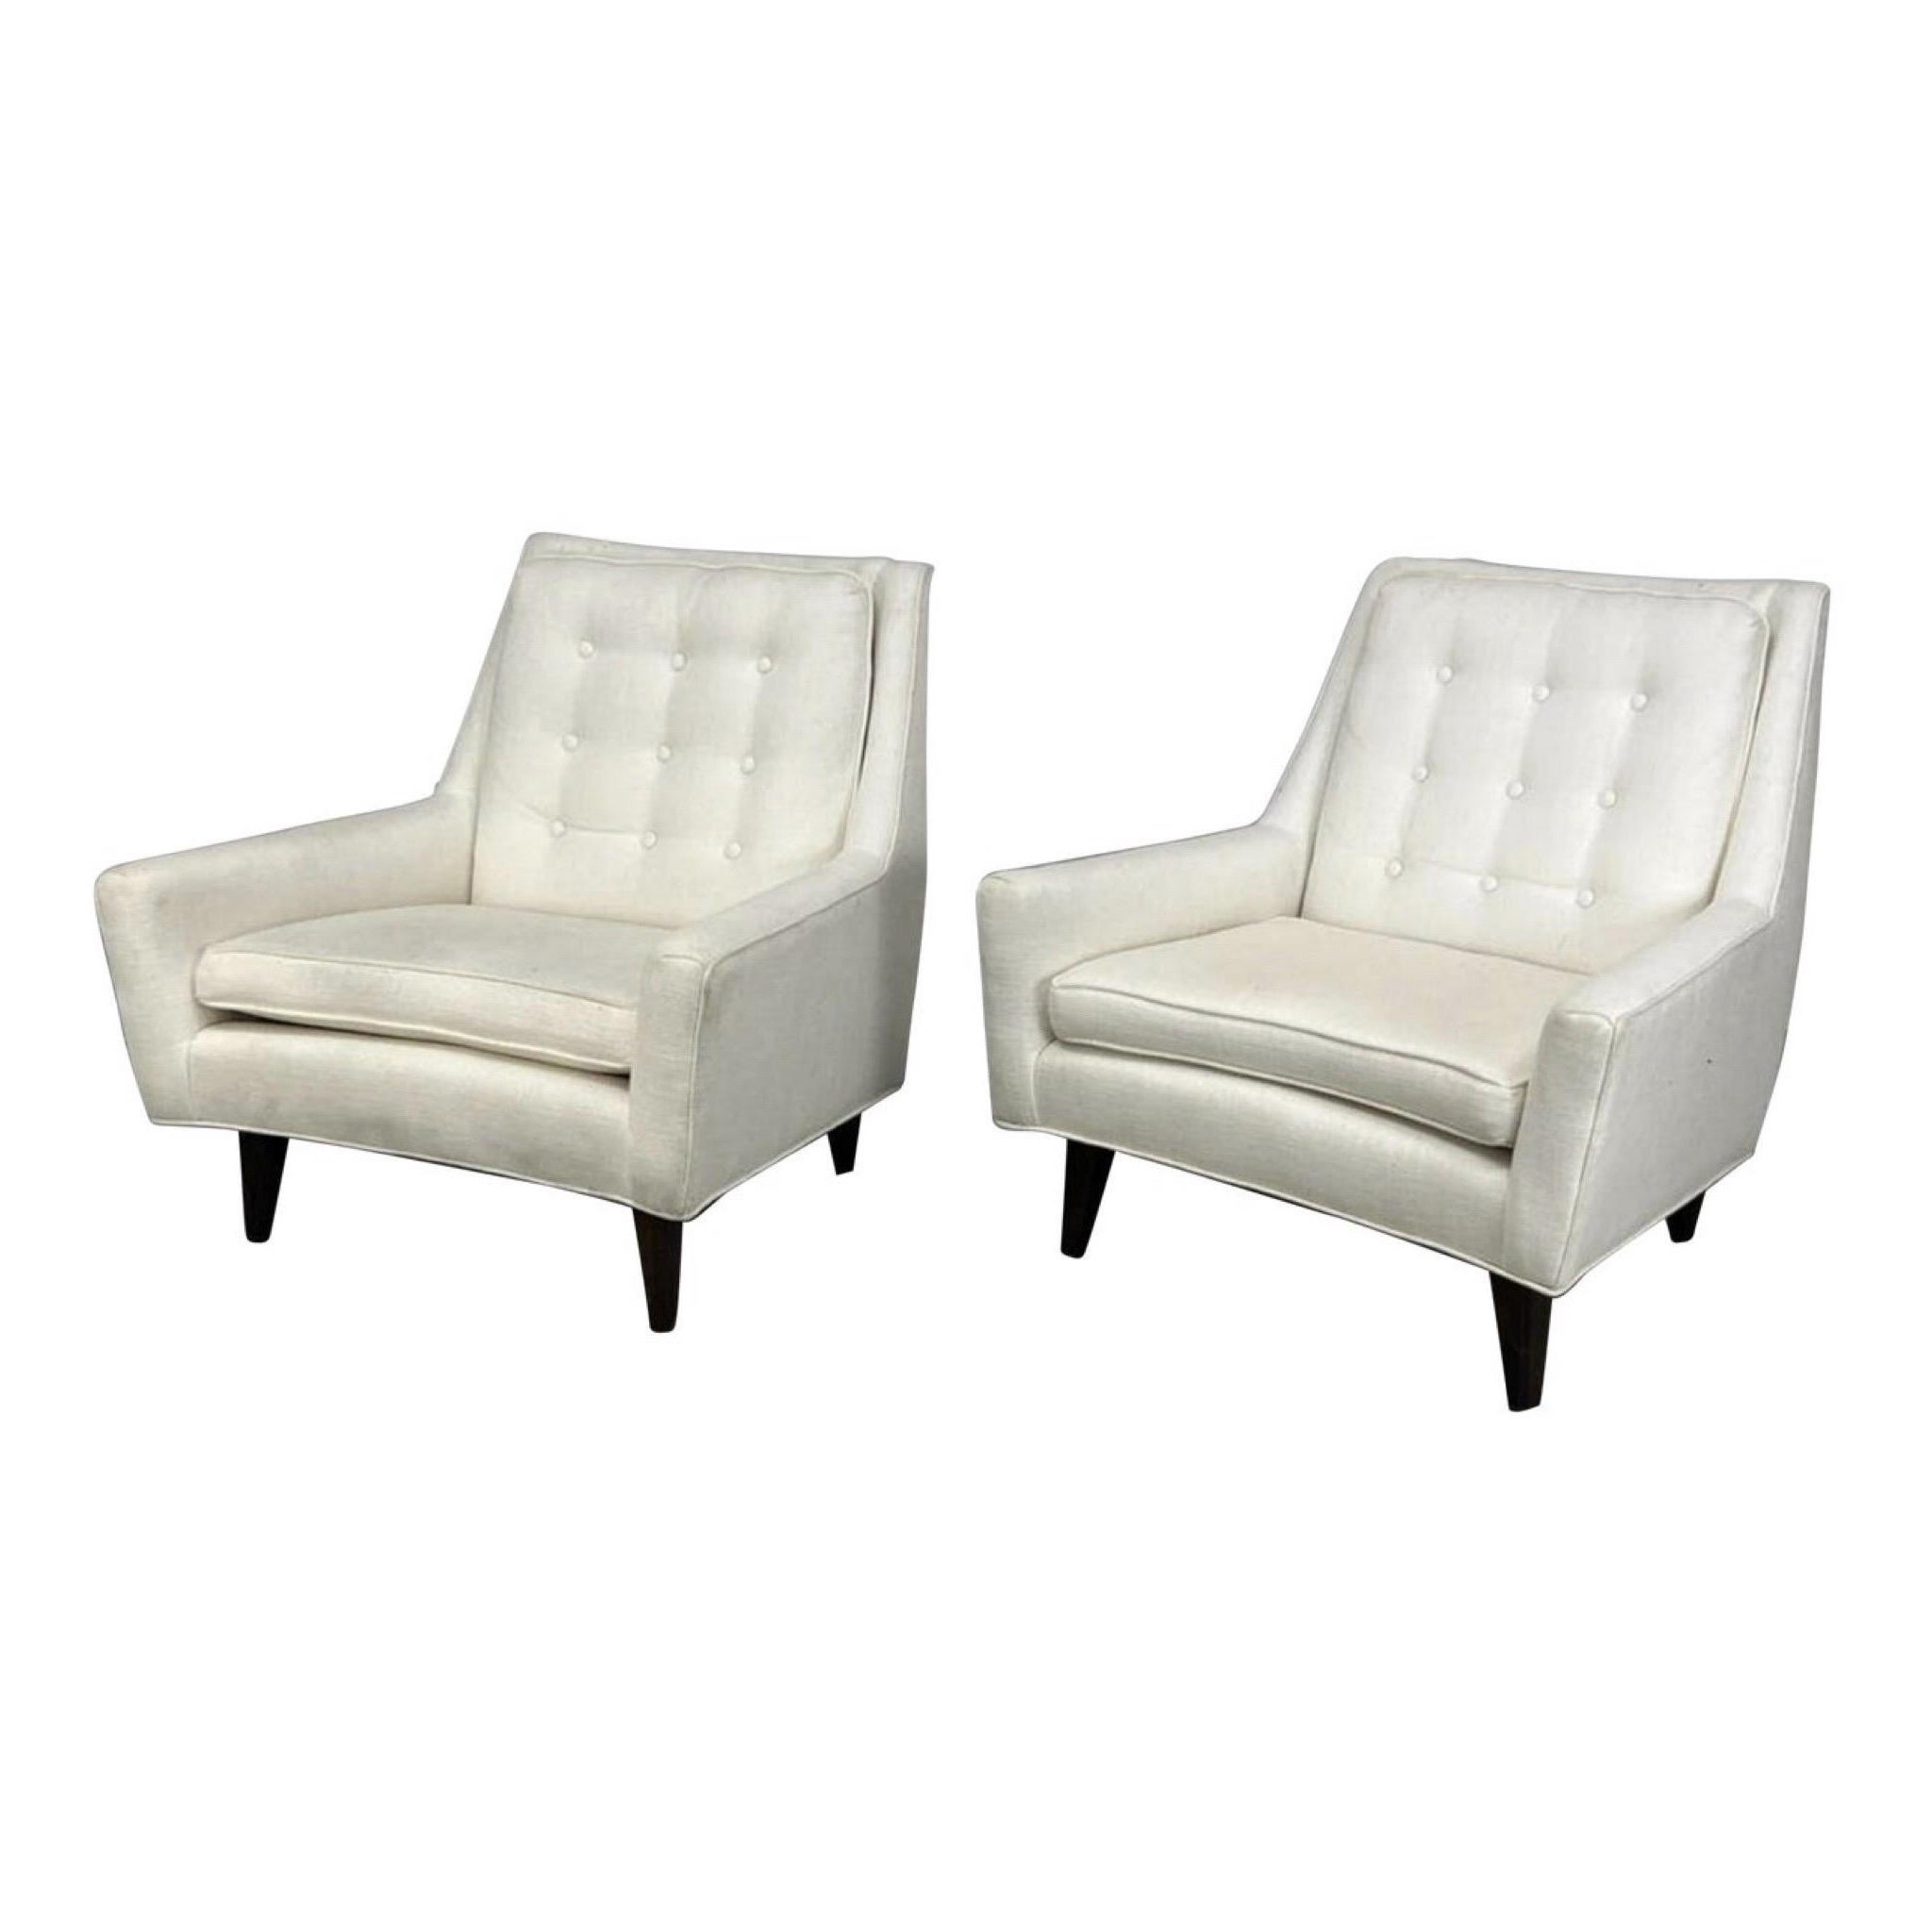 Edward Wormley zugeschriebene weiße gepolsterte Lounge-Stühle - ein Paar